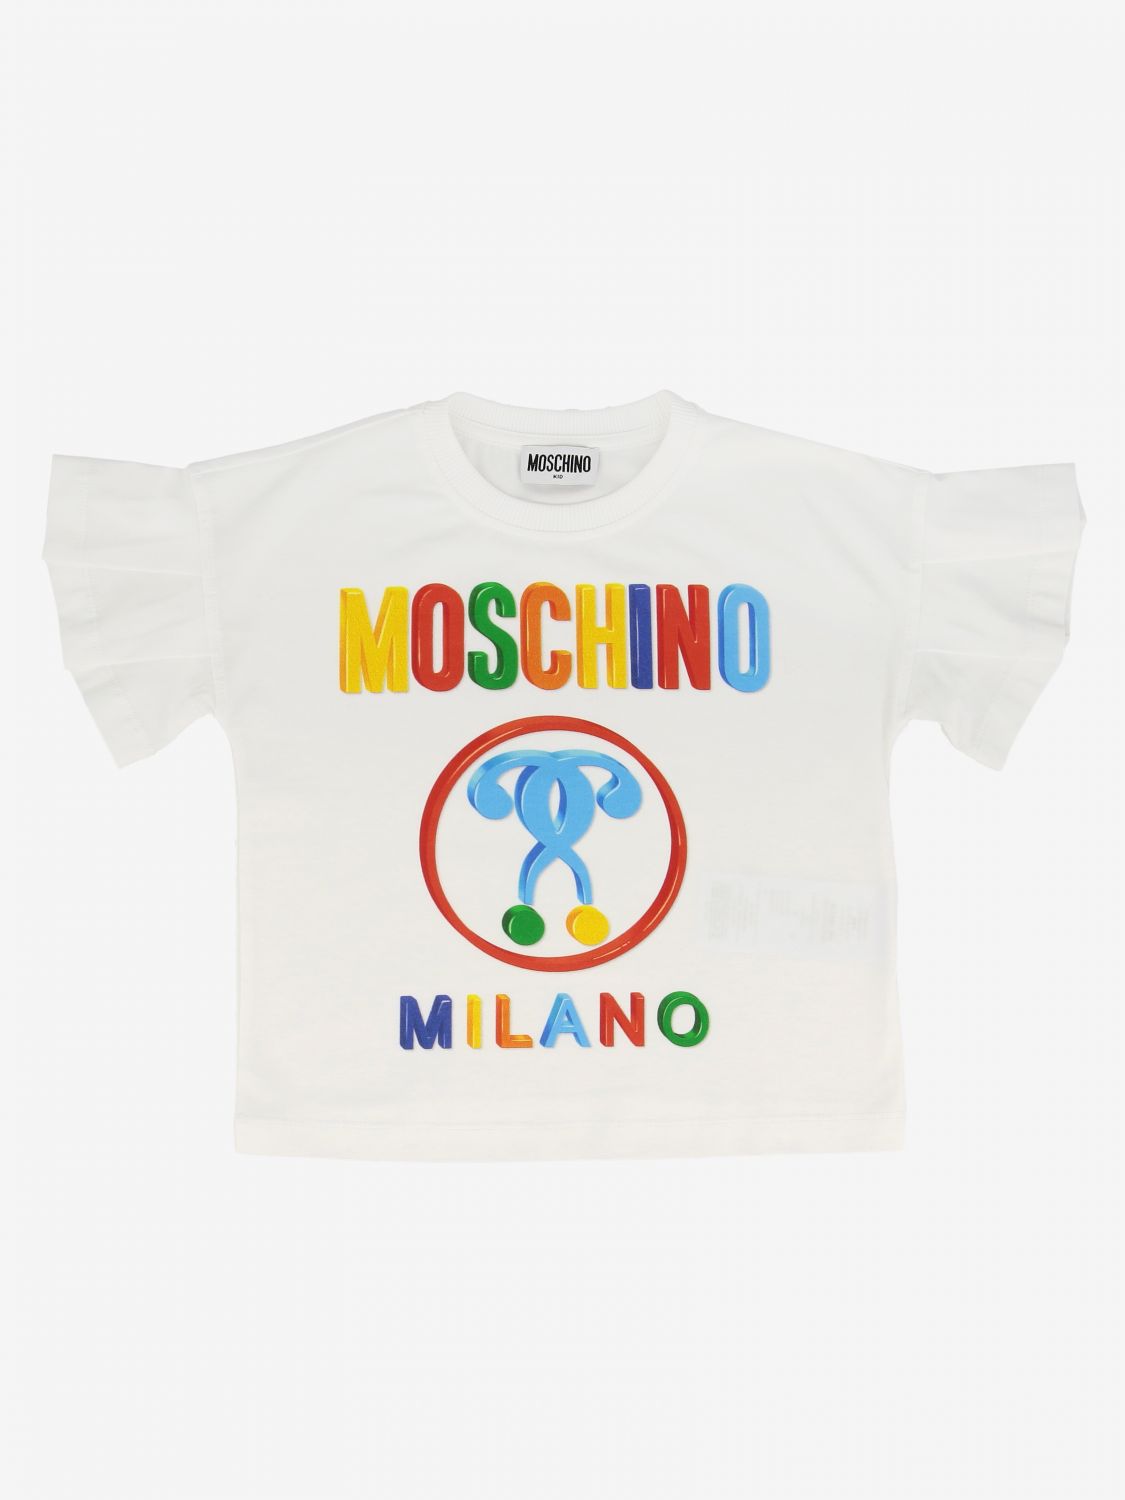 moschino t shirt junior